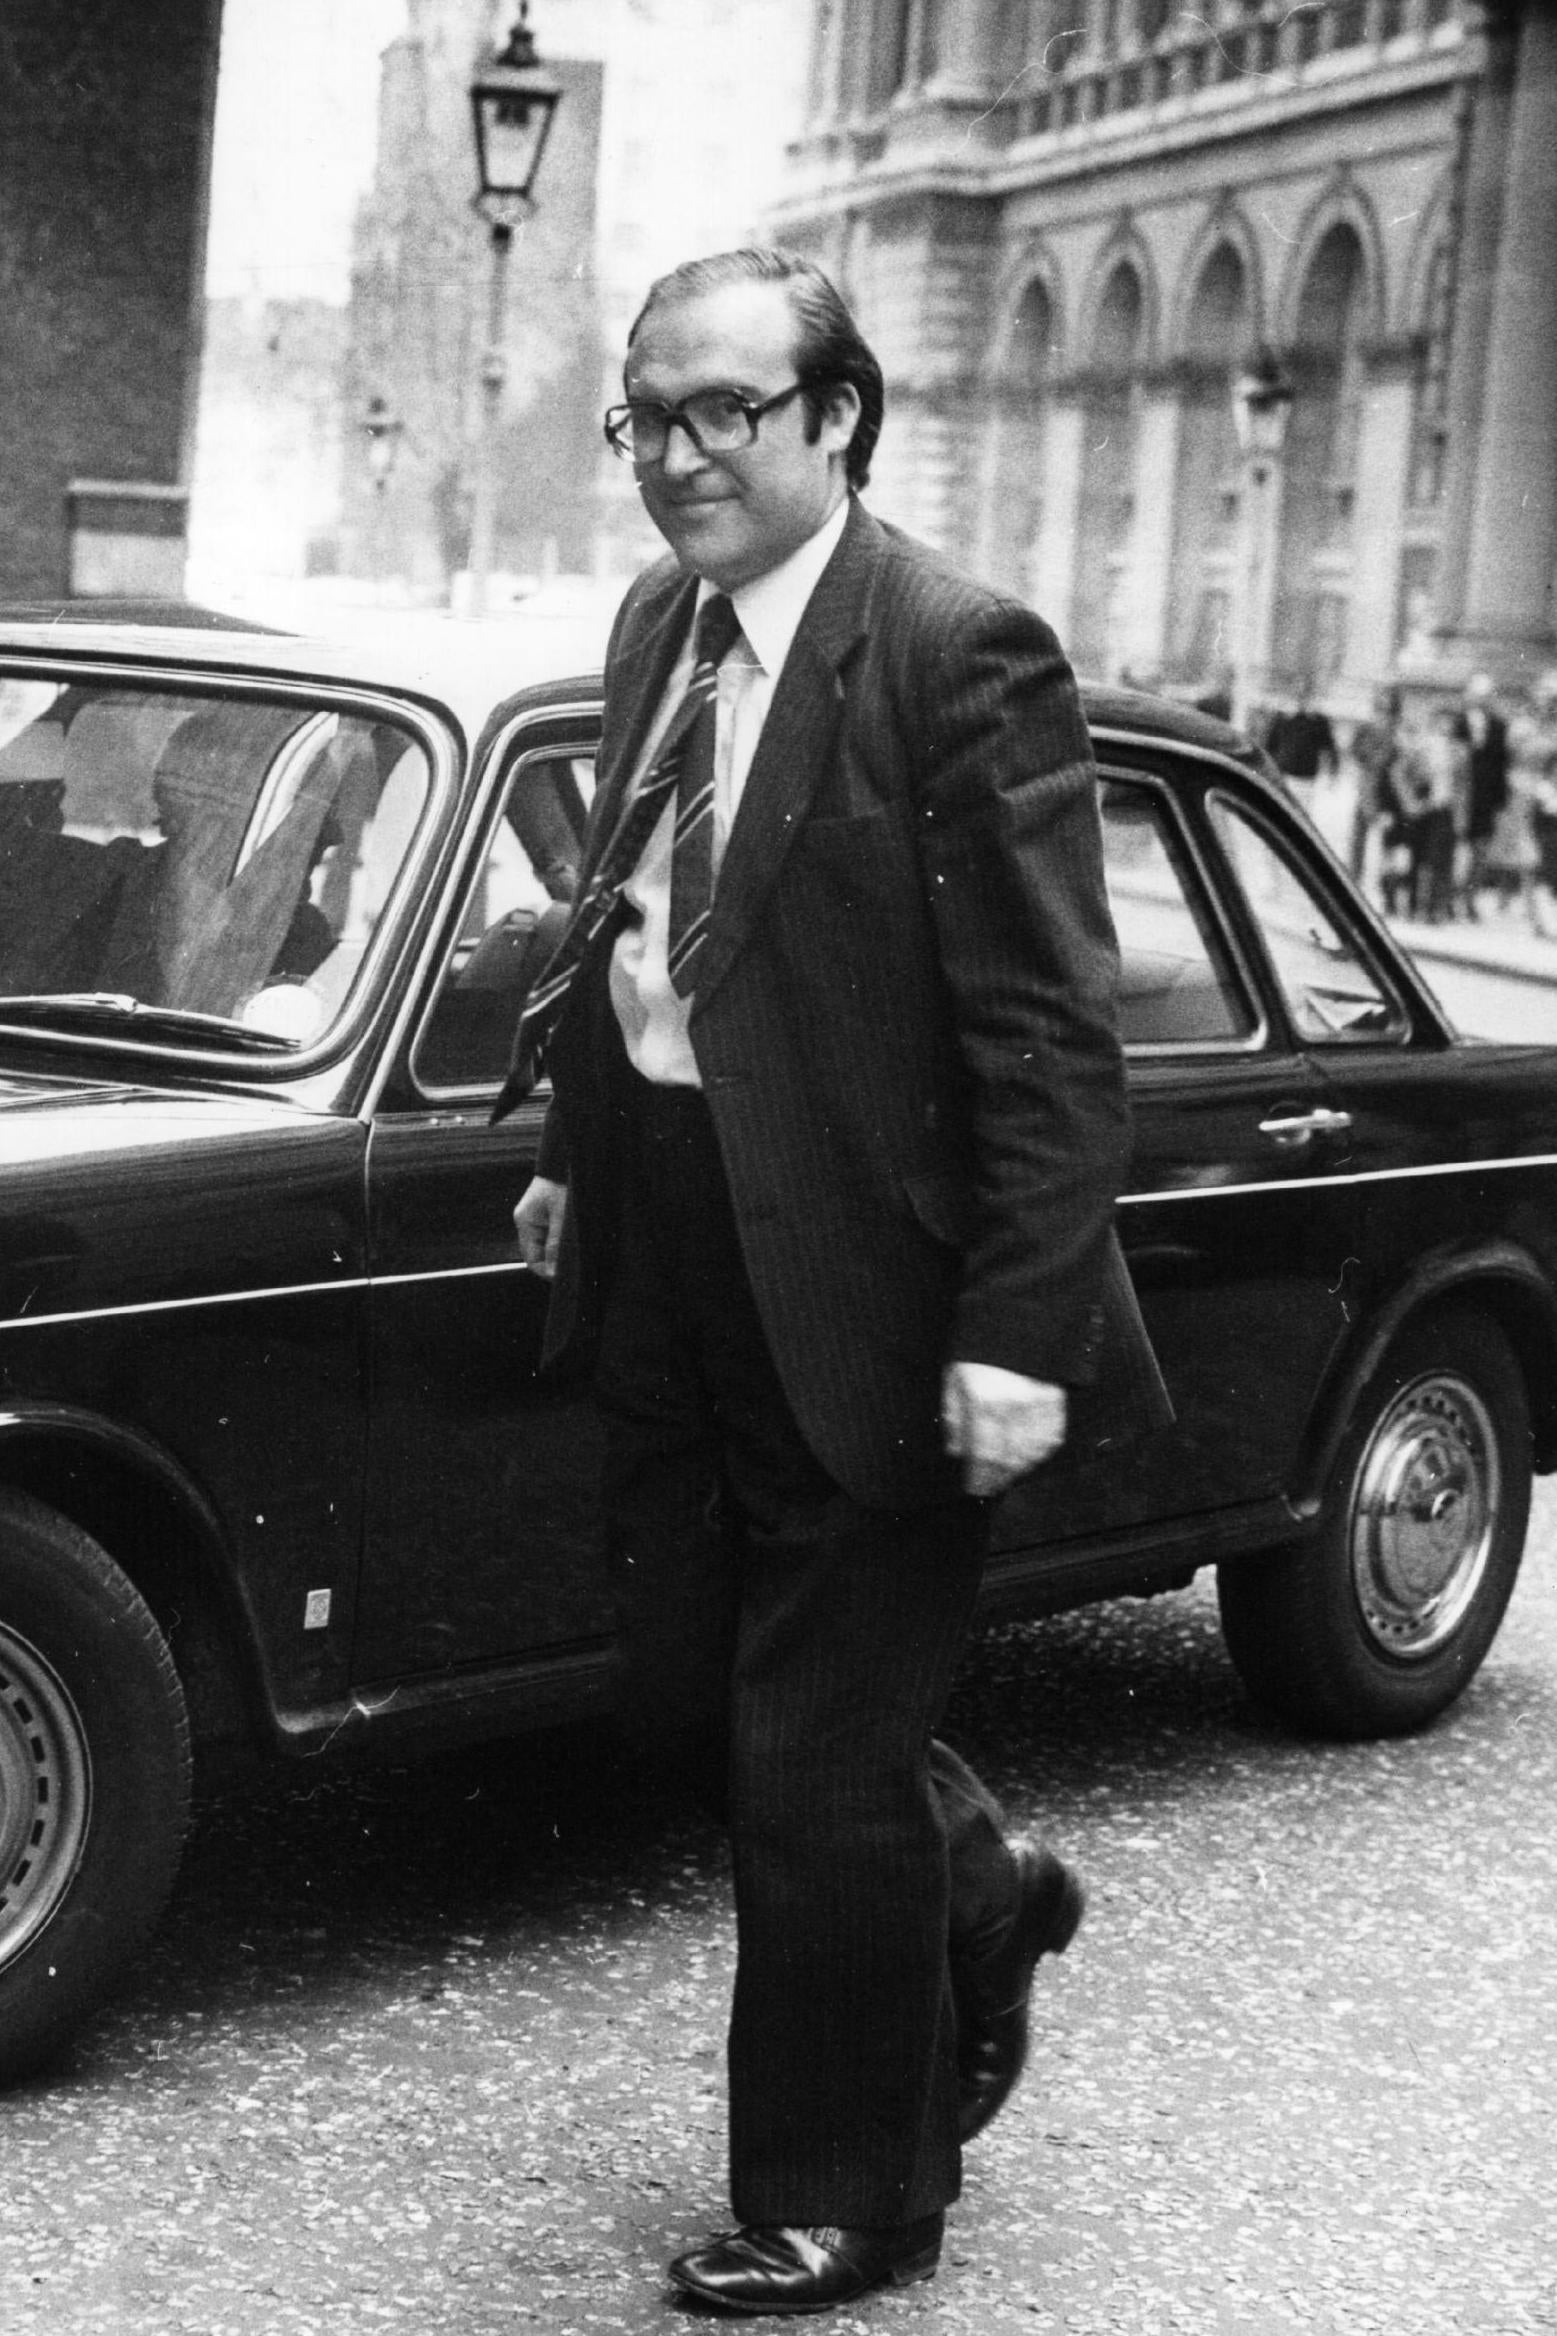 The politician in 1976